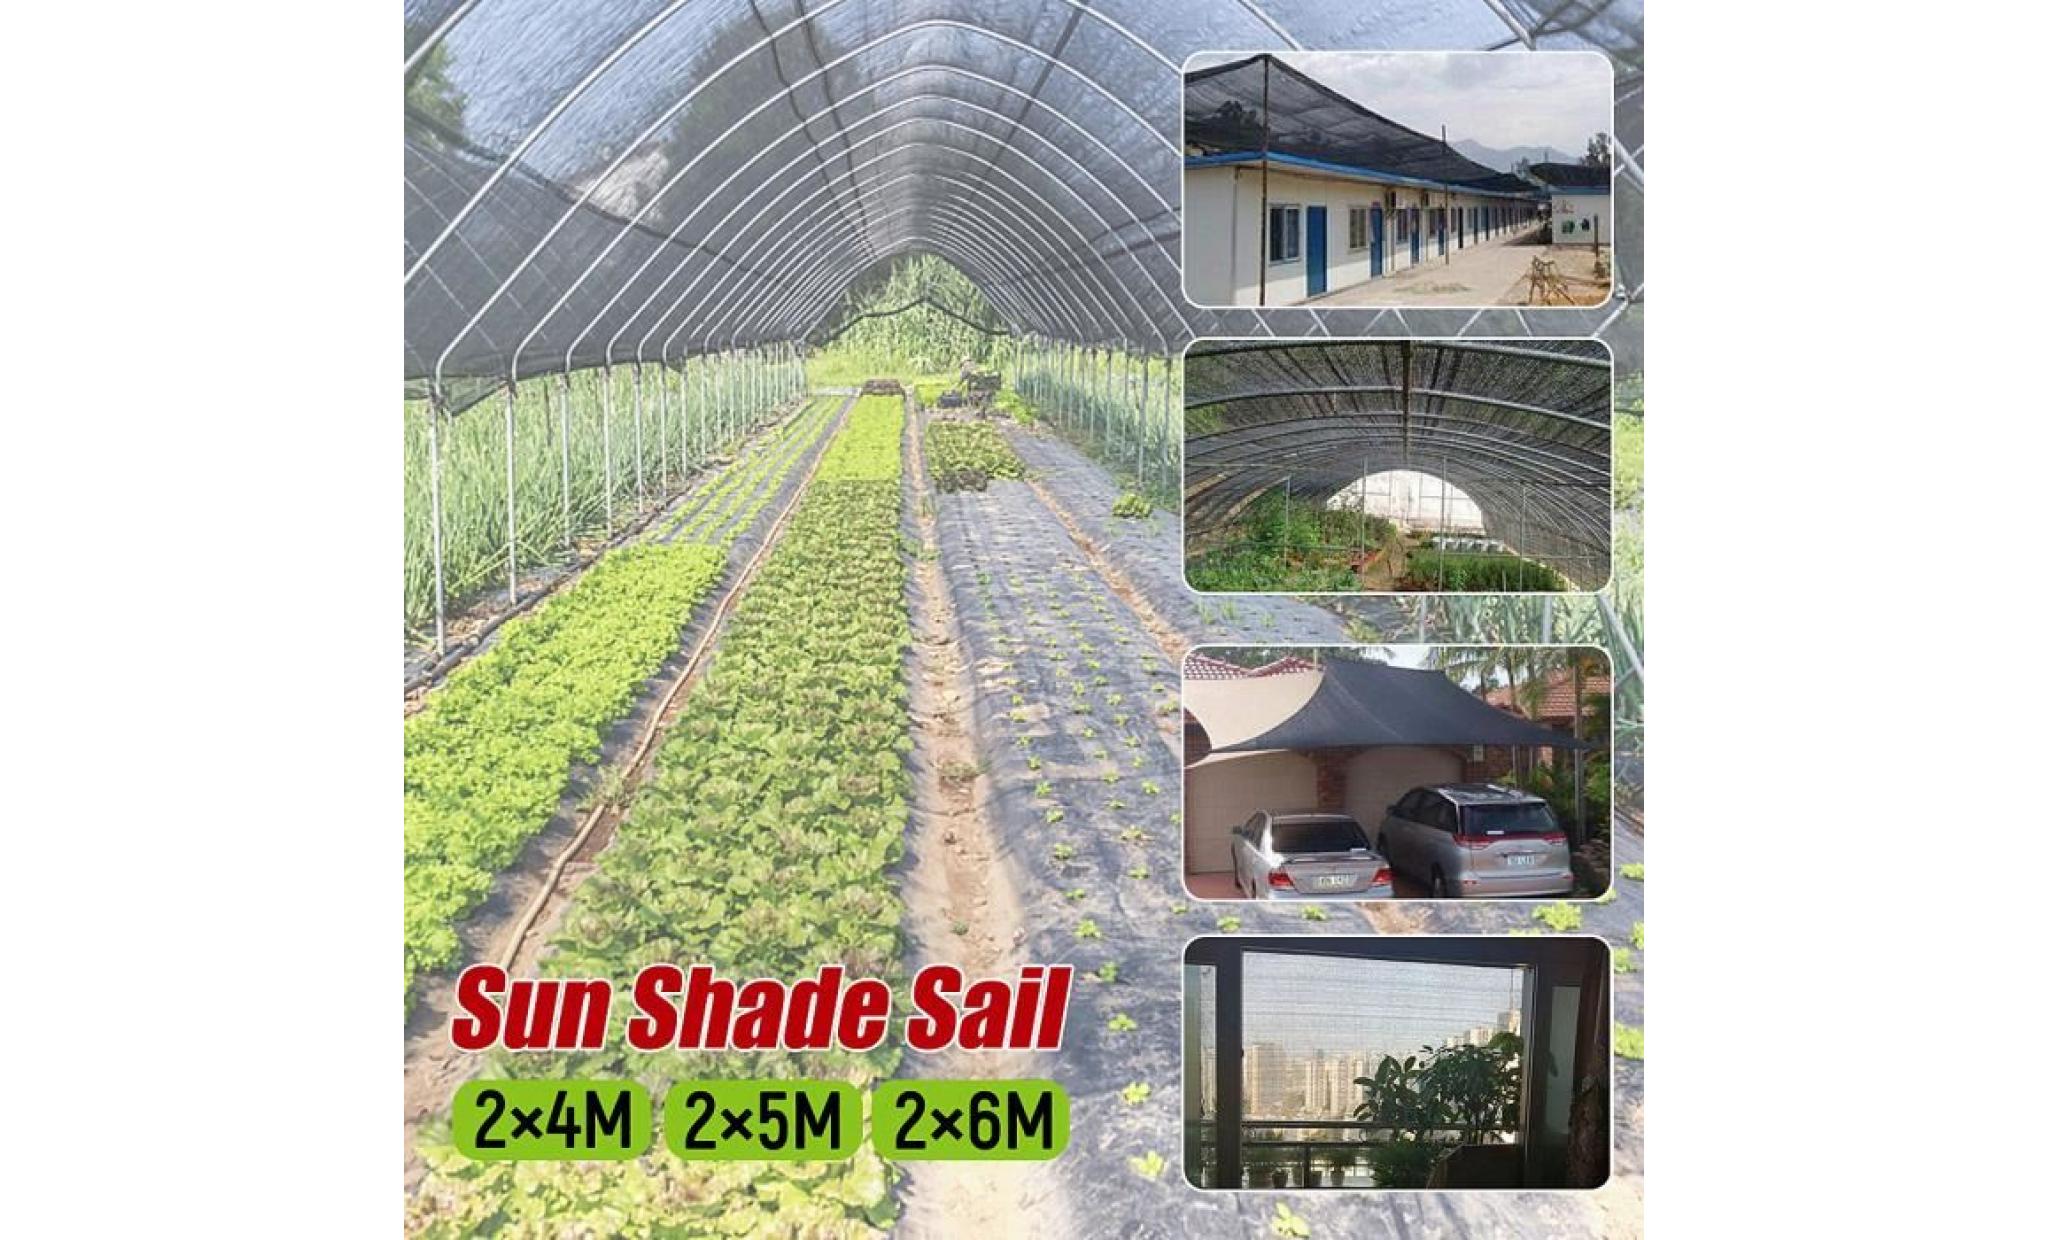 neufu voile d'ombrage protection anti uv solaire toile tendue parasol jardin serre 2x6m pas cher